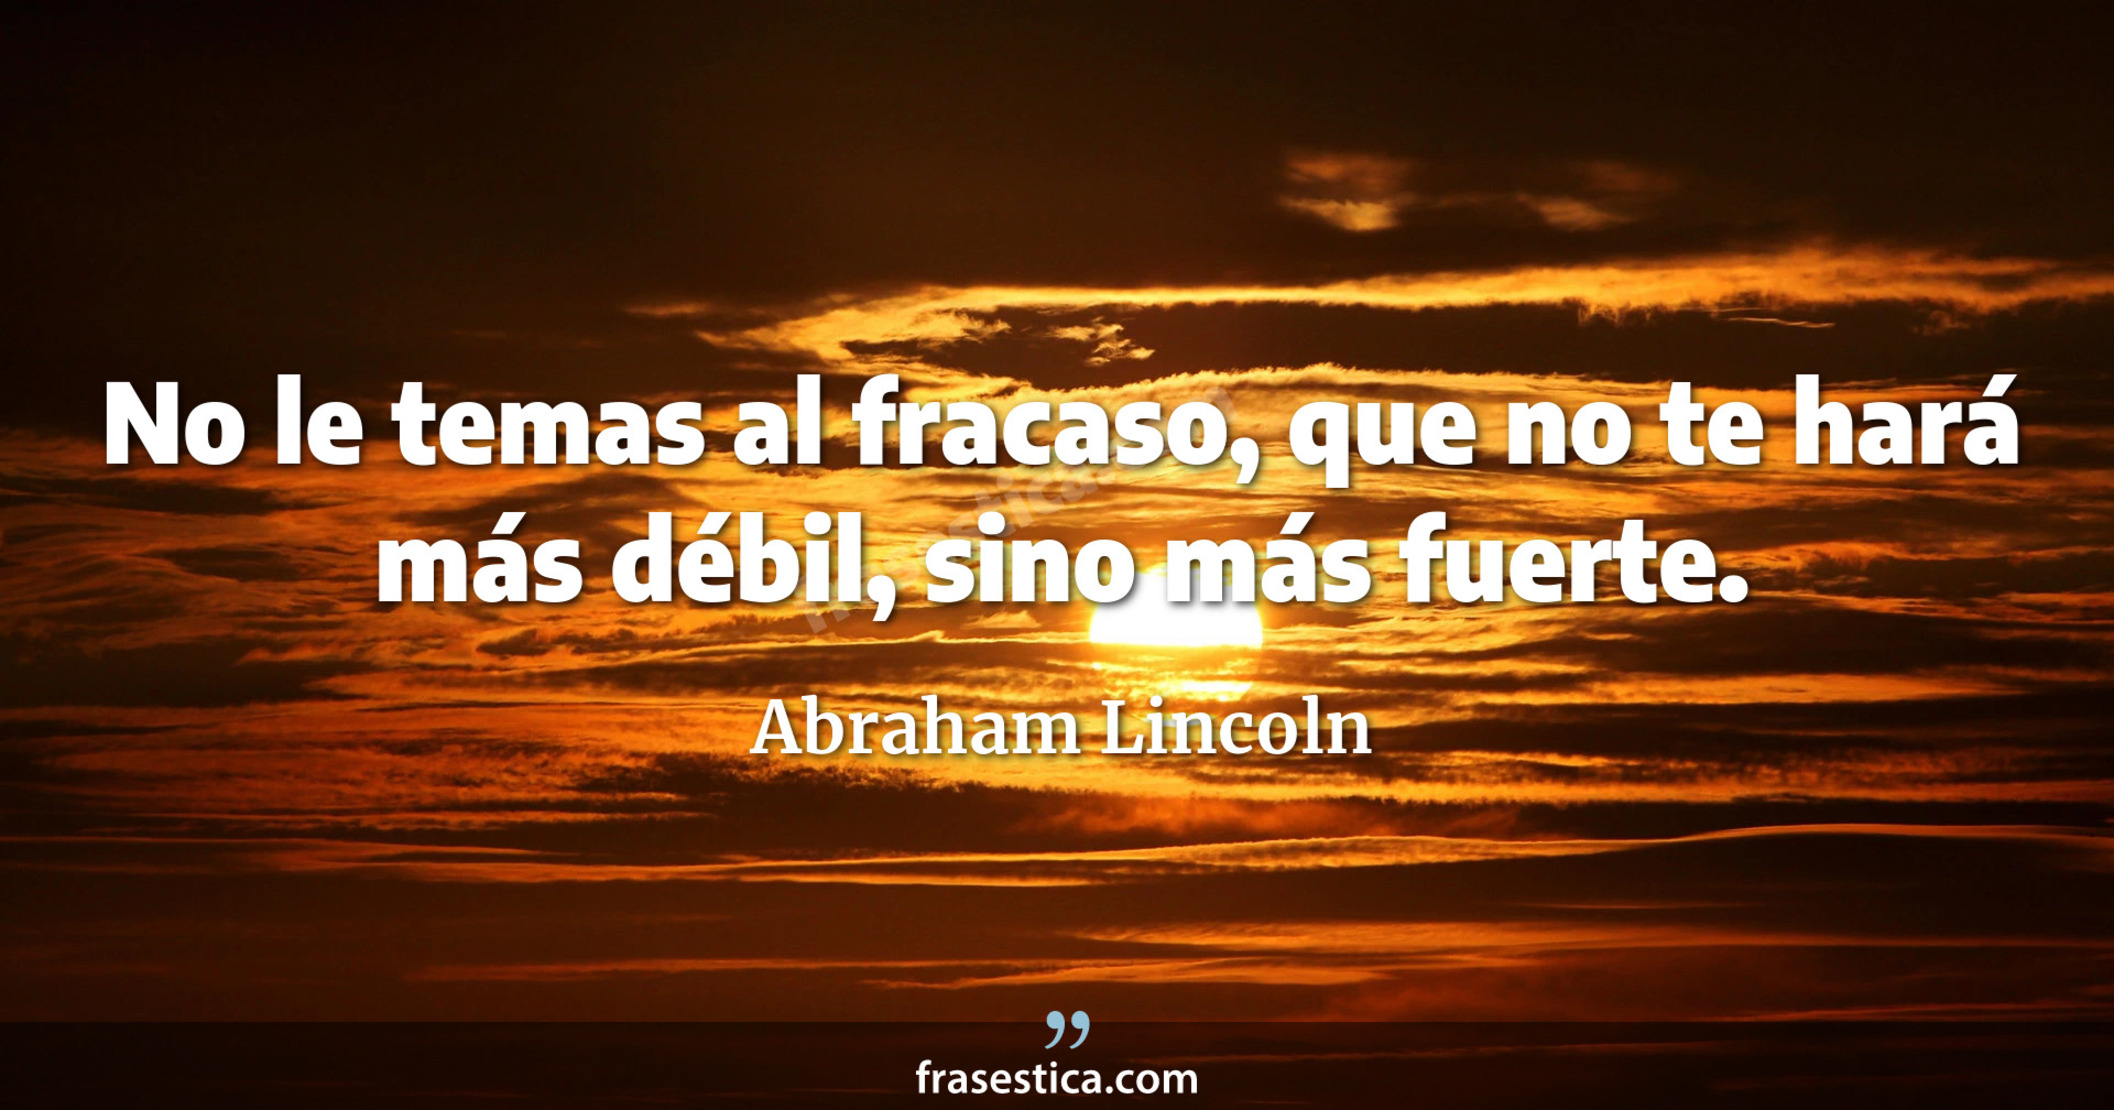 No le temas al fracaso, que no te hará más débil, sino más fuerte. - Abraham Lincoln